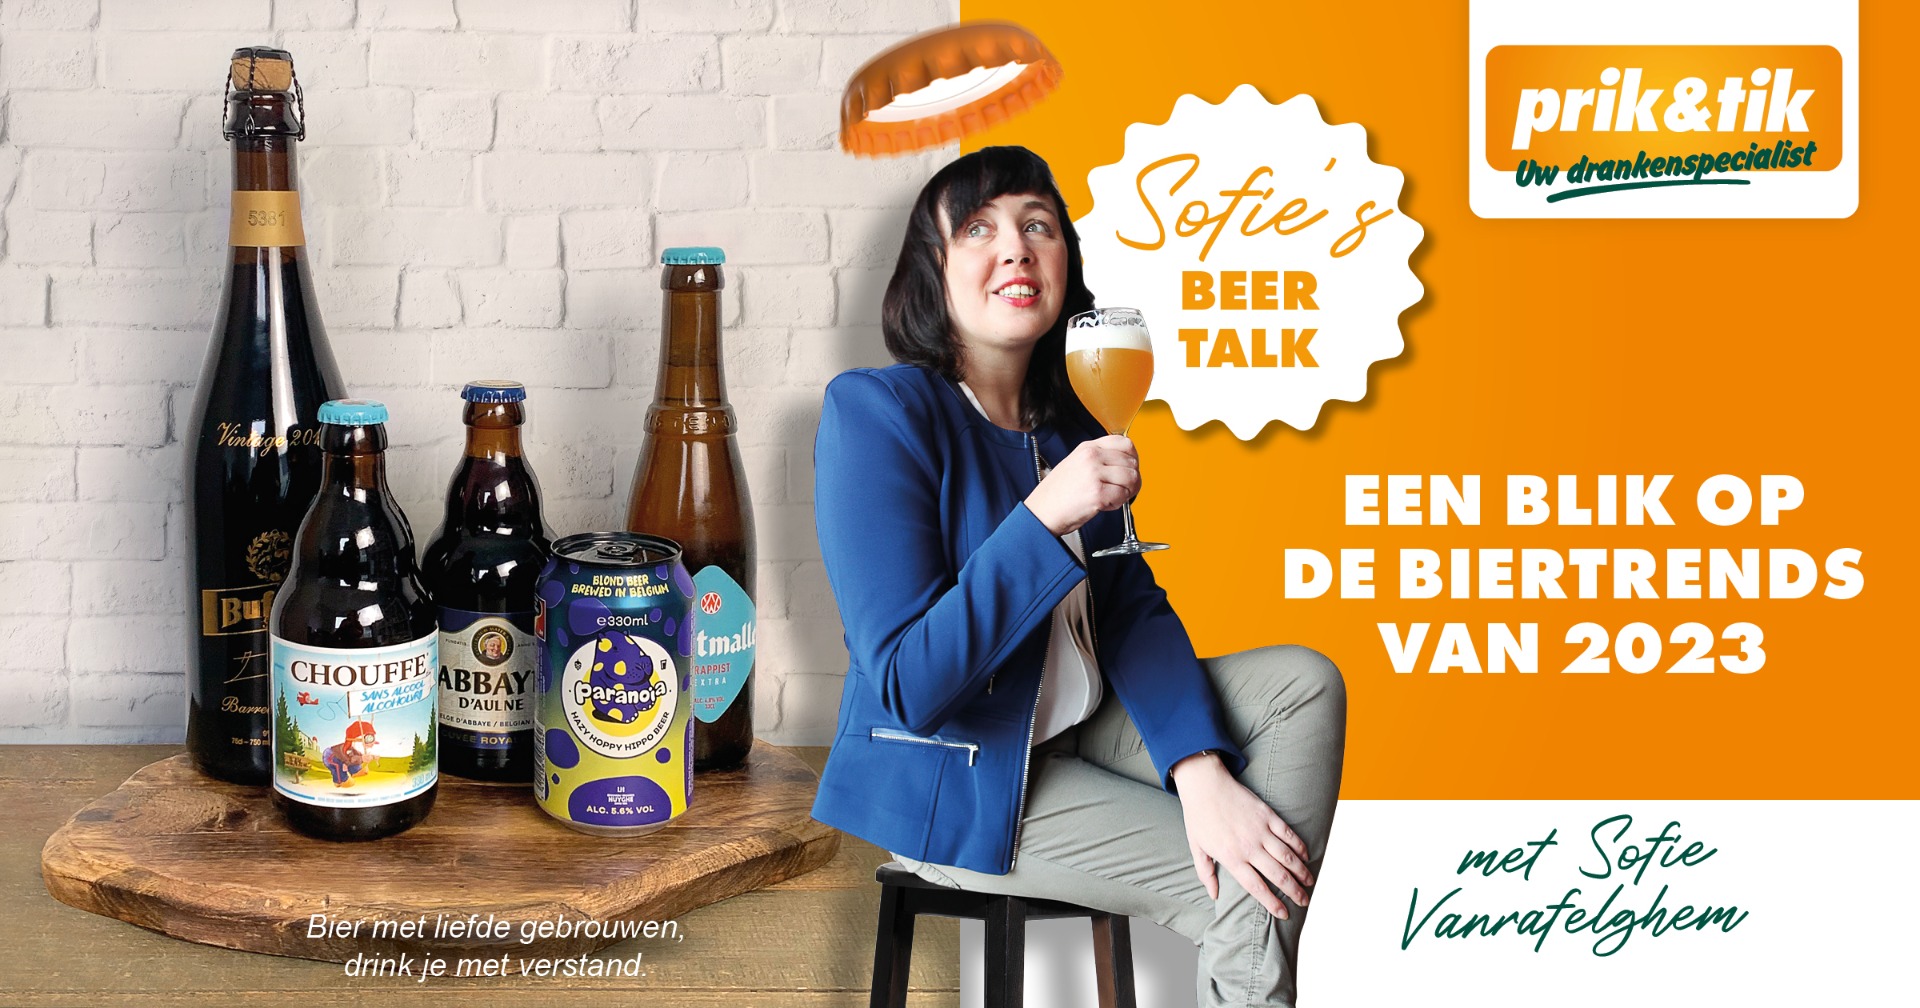 Sofie's Beer Talk: Een blik op de biertrends van 2023